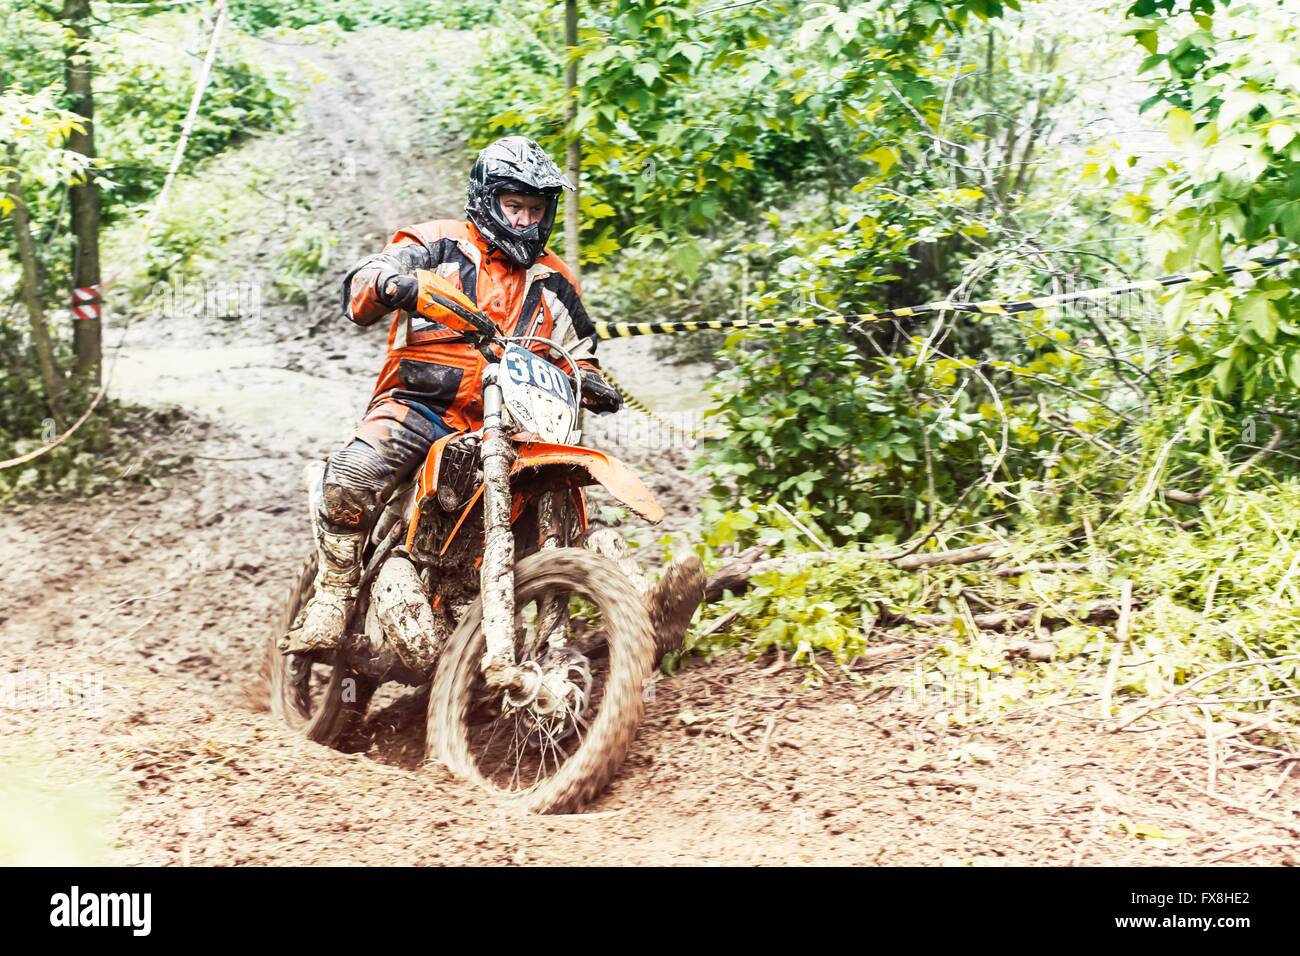 Enduro motobiker in mud Stock Photo